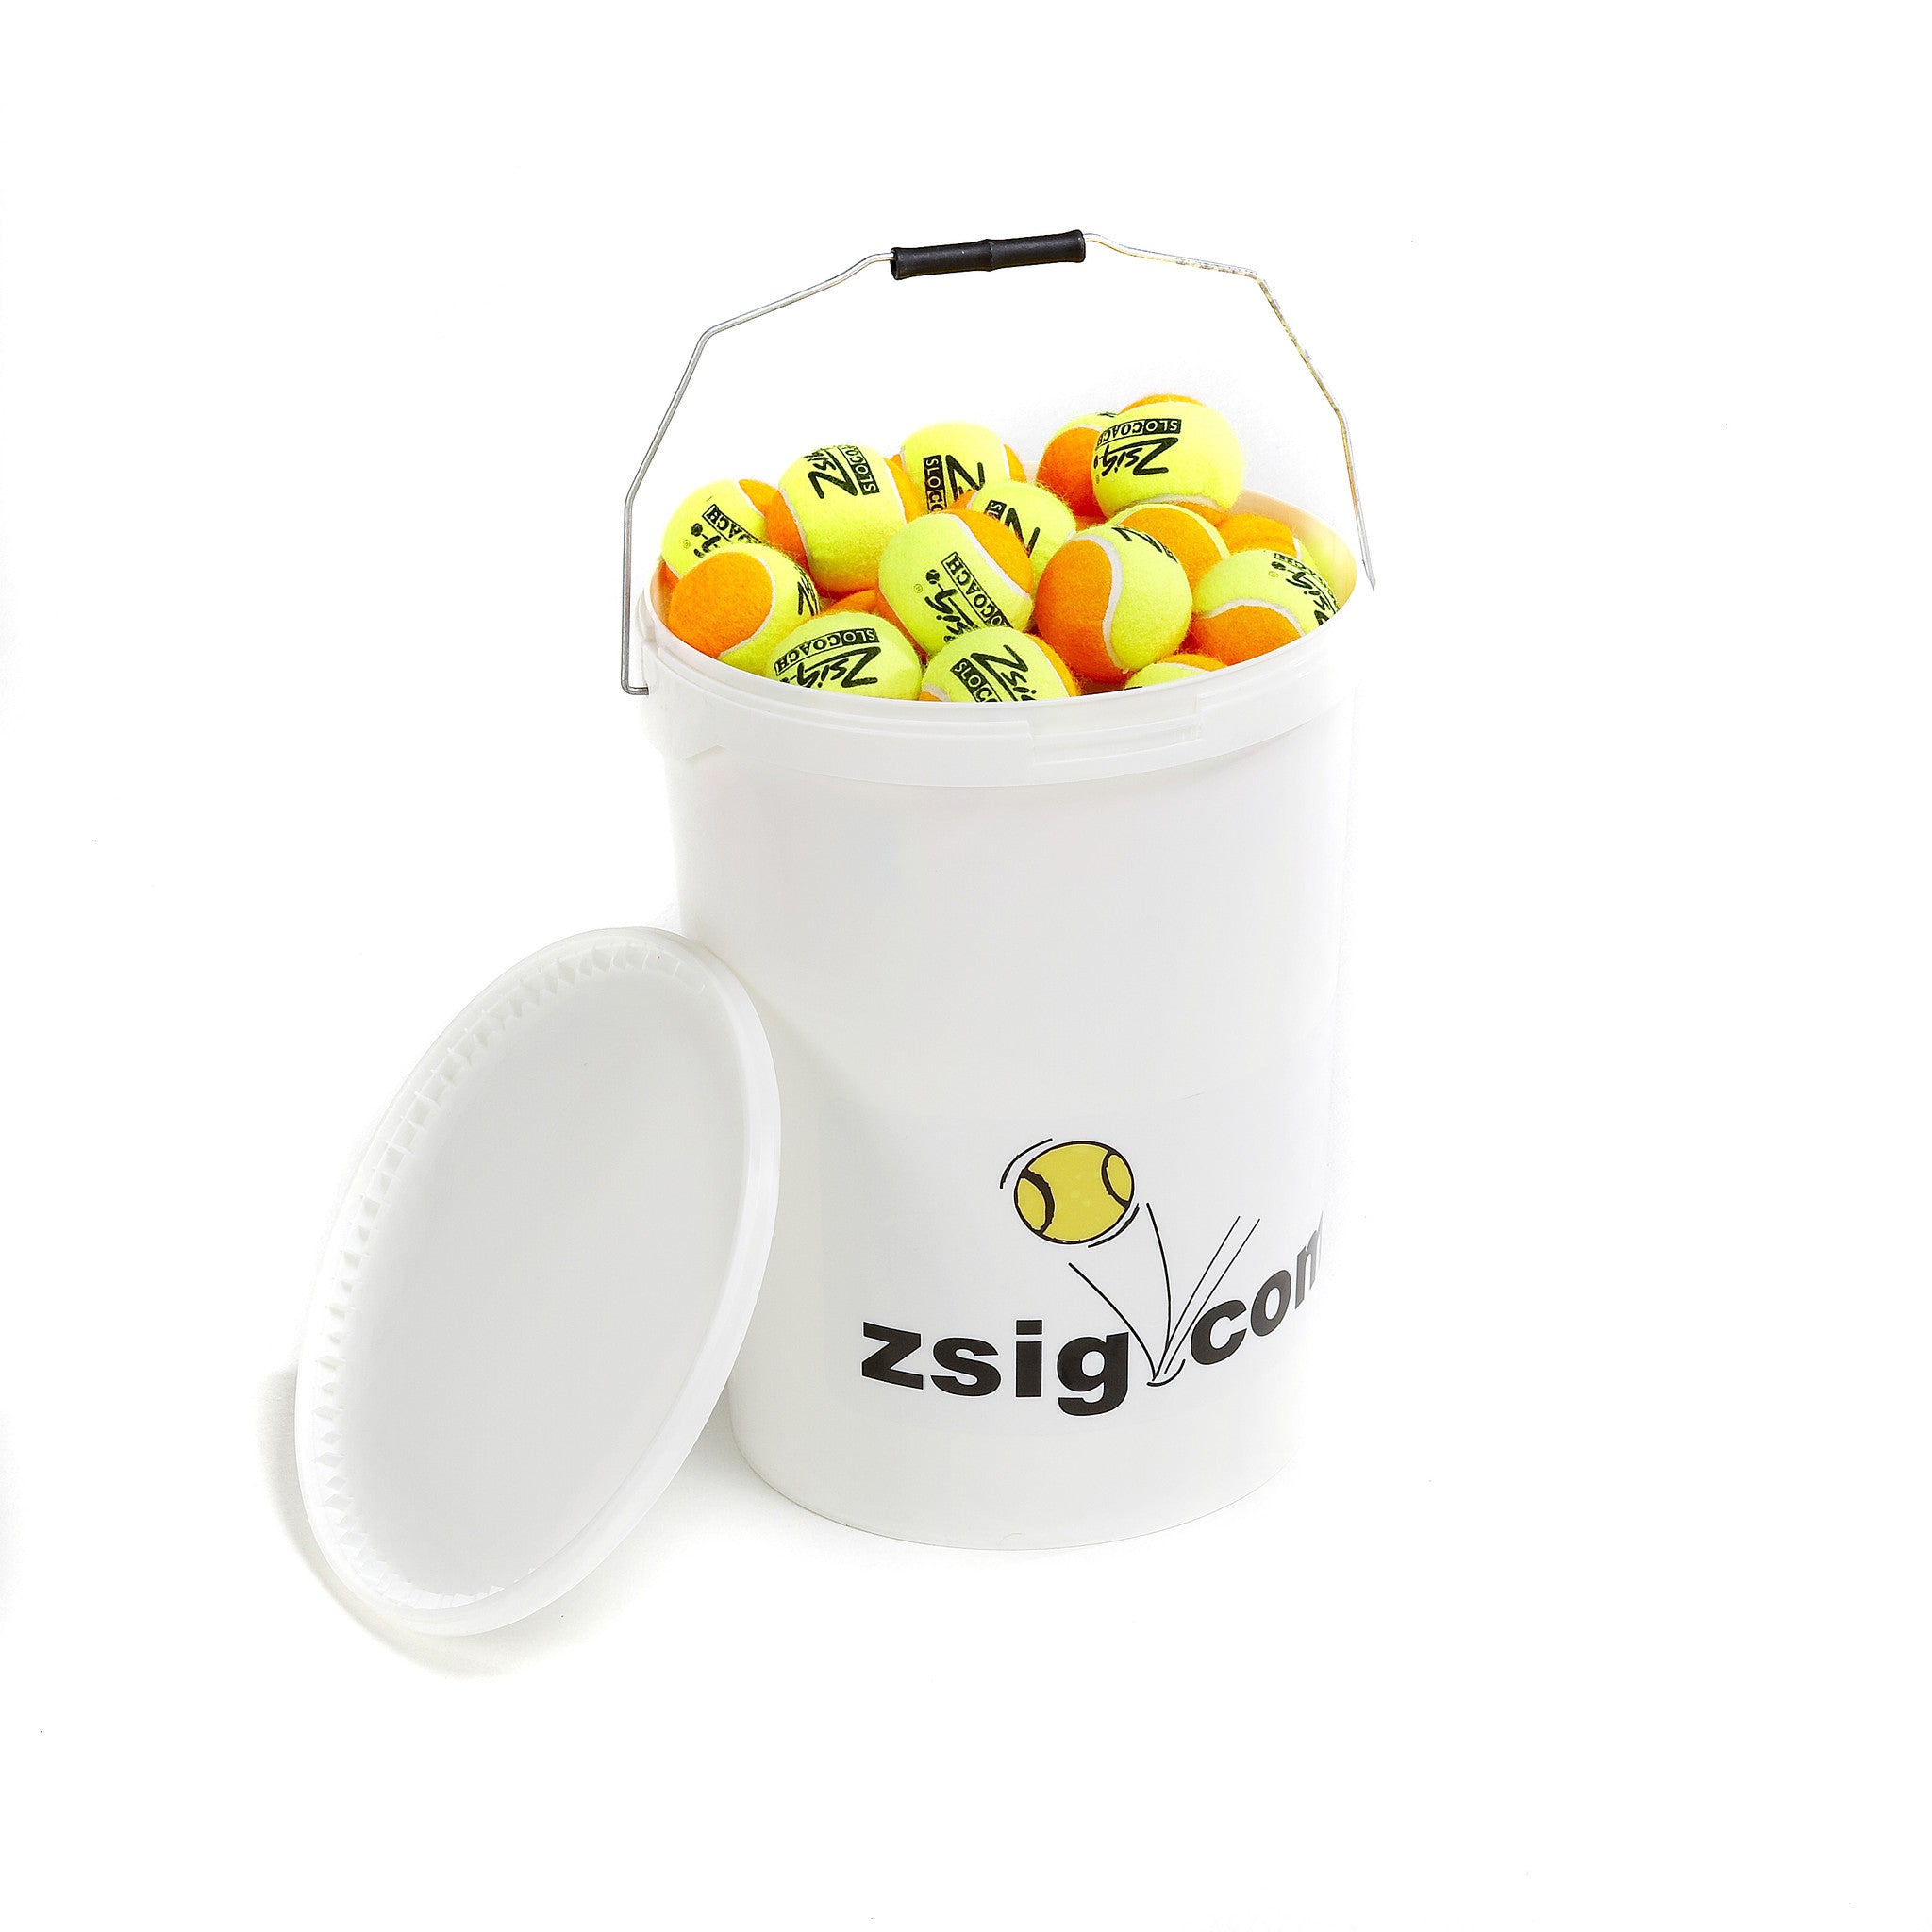 Zsig Slocoach Orange Mini Tennis Balls in an 8 dozen bucket